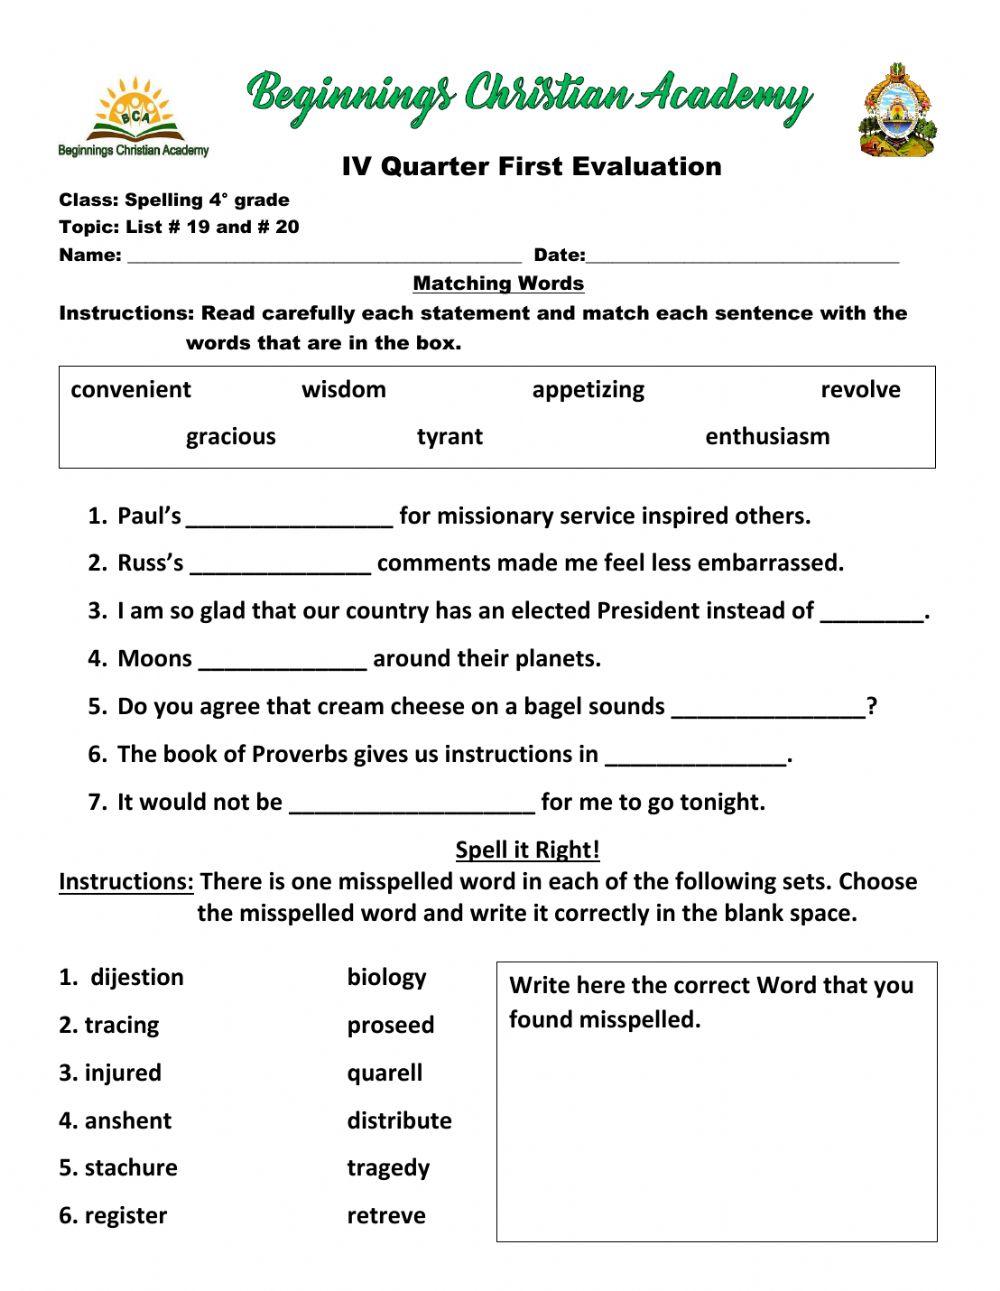 4° Spelling Quiz IV QUARTER First Evaluation